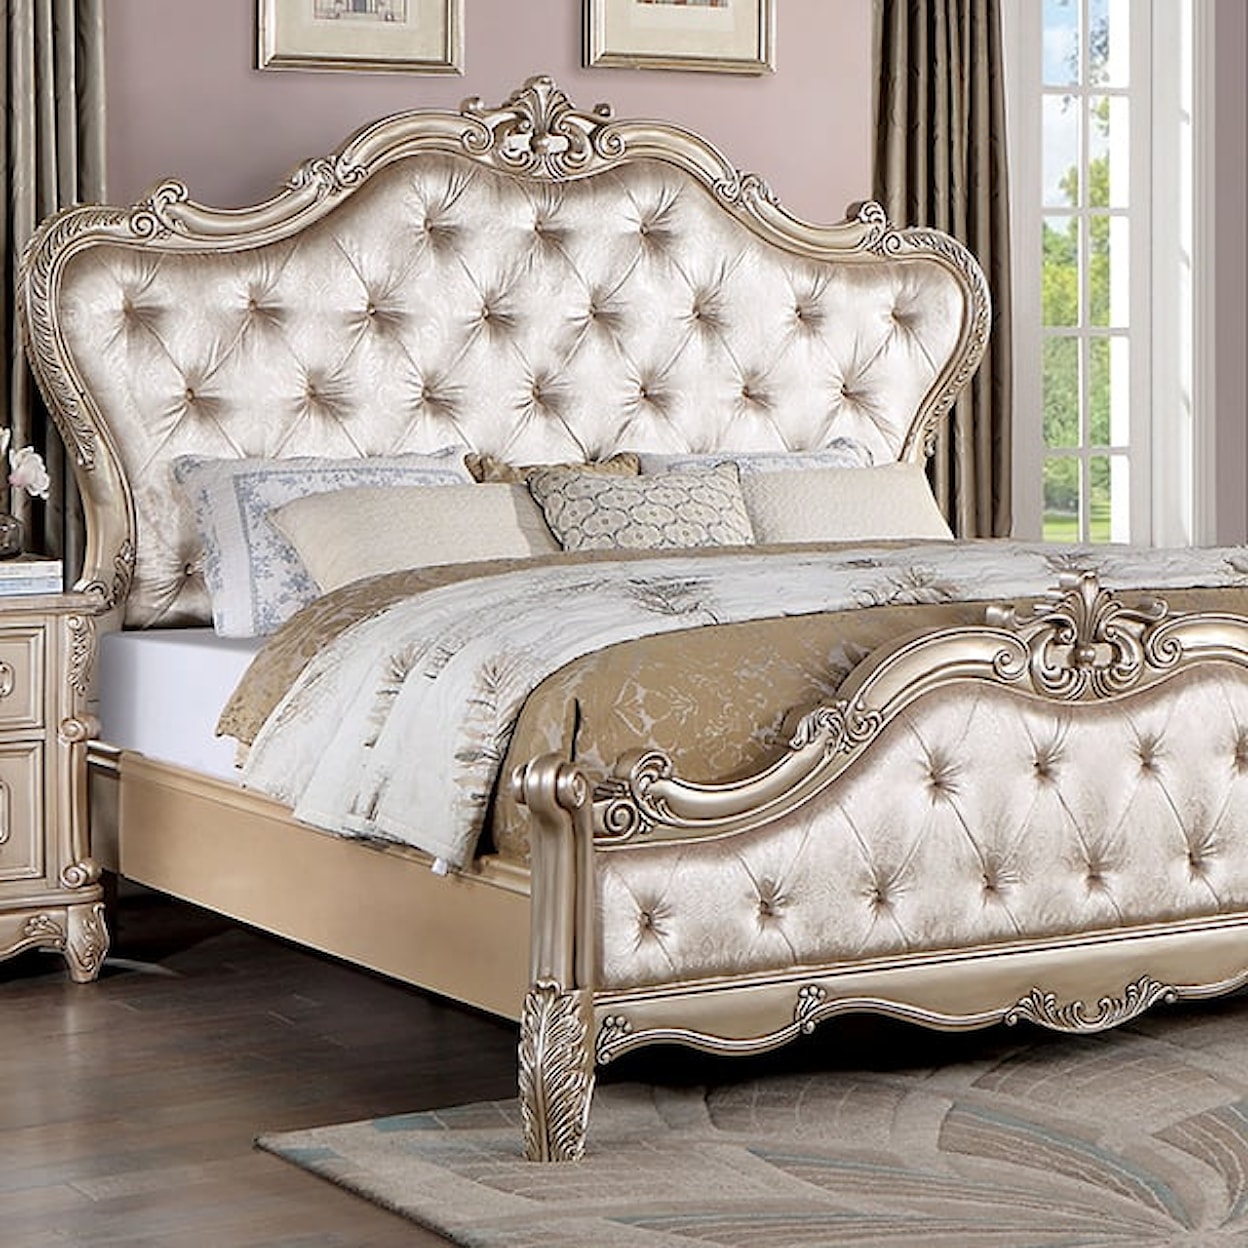 Furniture of America Rosalind Upholstered King Bed